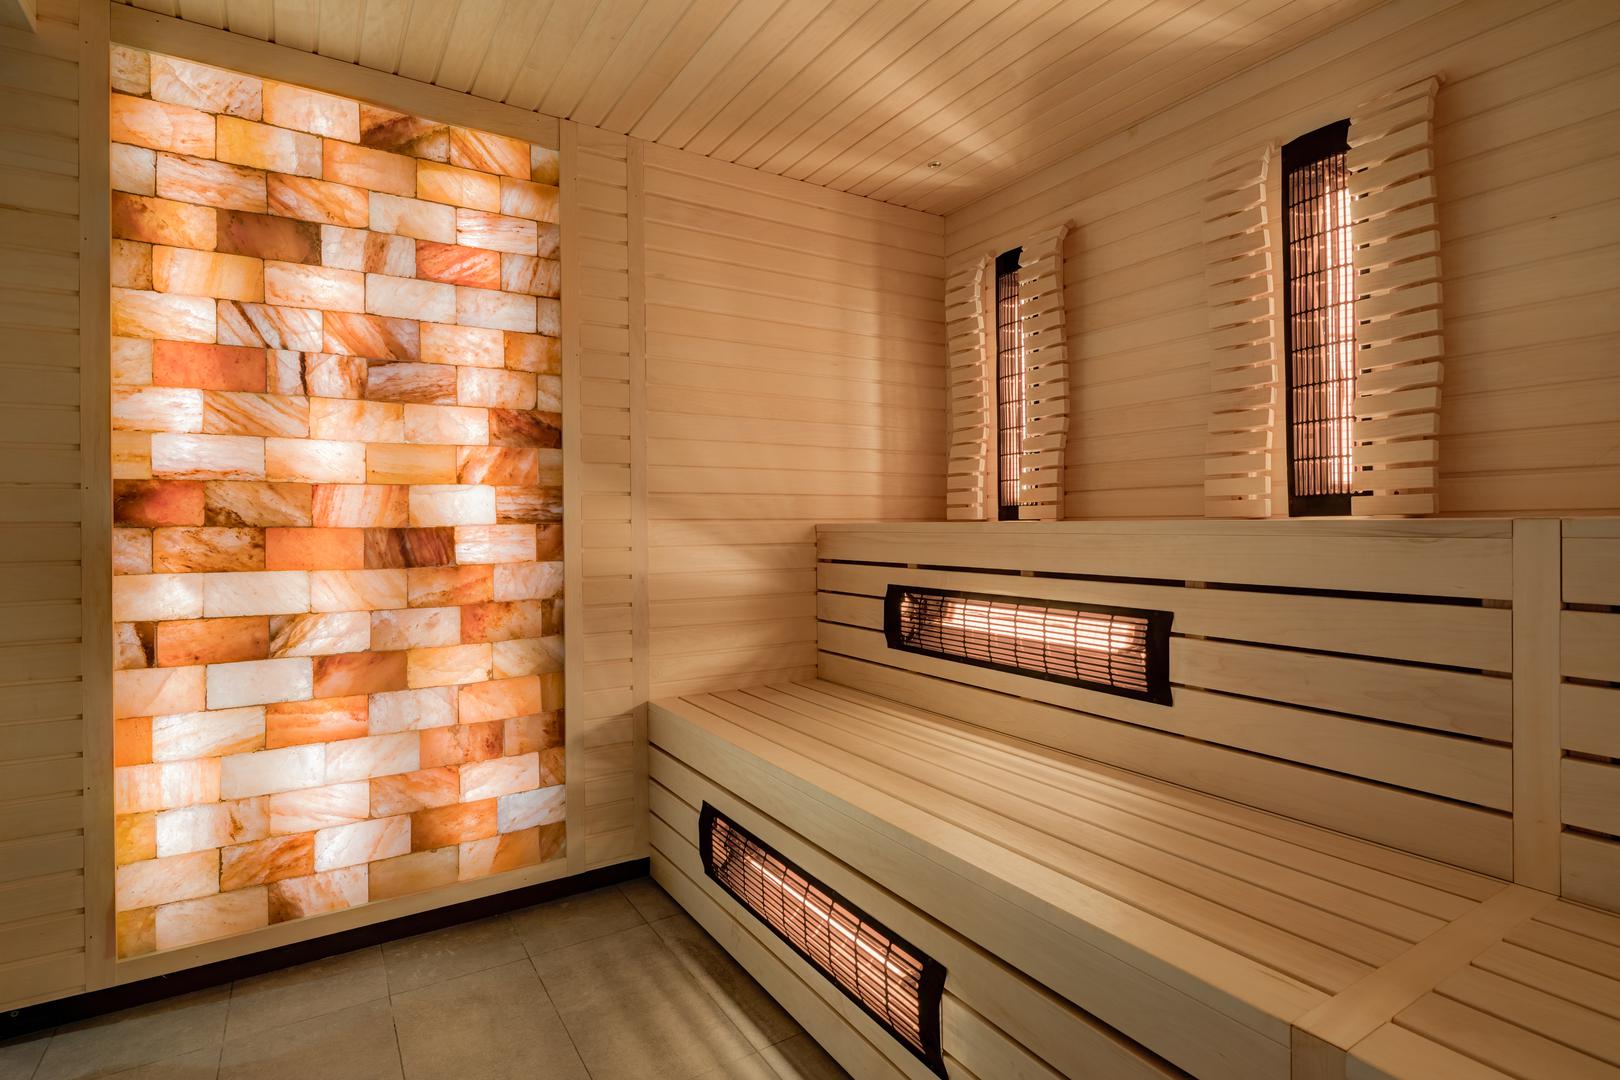 Klasična finska sauna
razigrana je zanimljivim dizajnom prostora i diskretnom ambijentalnom rasvjetom